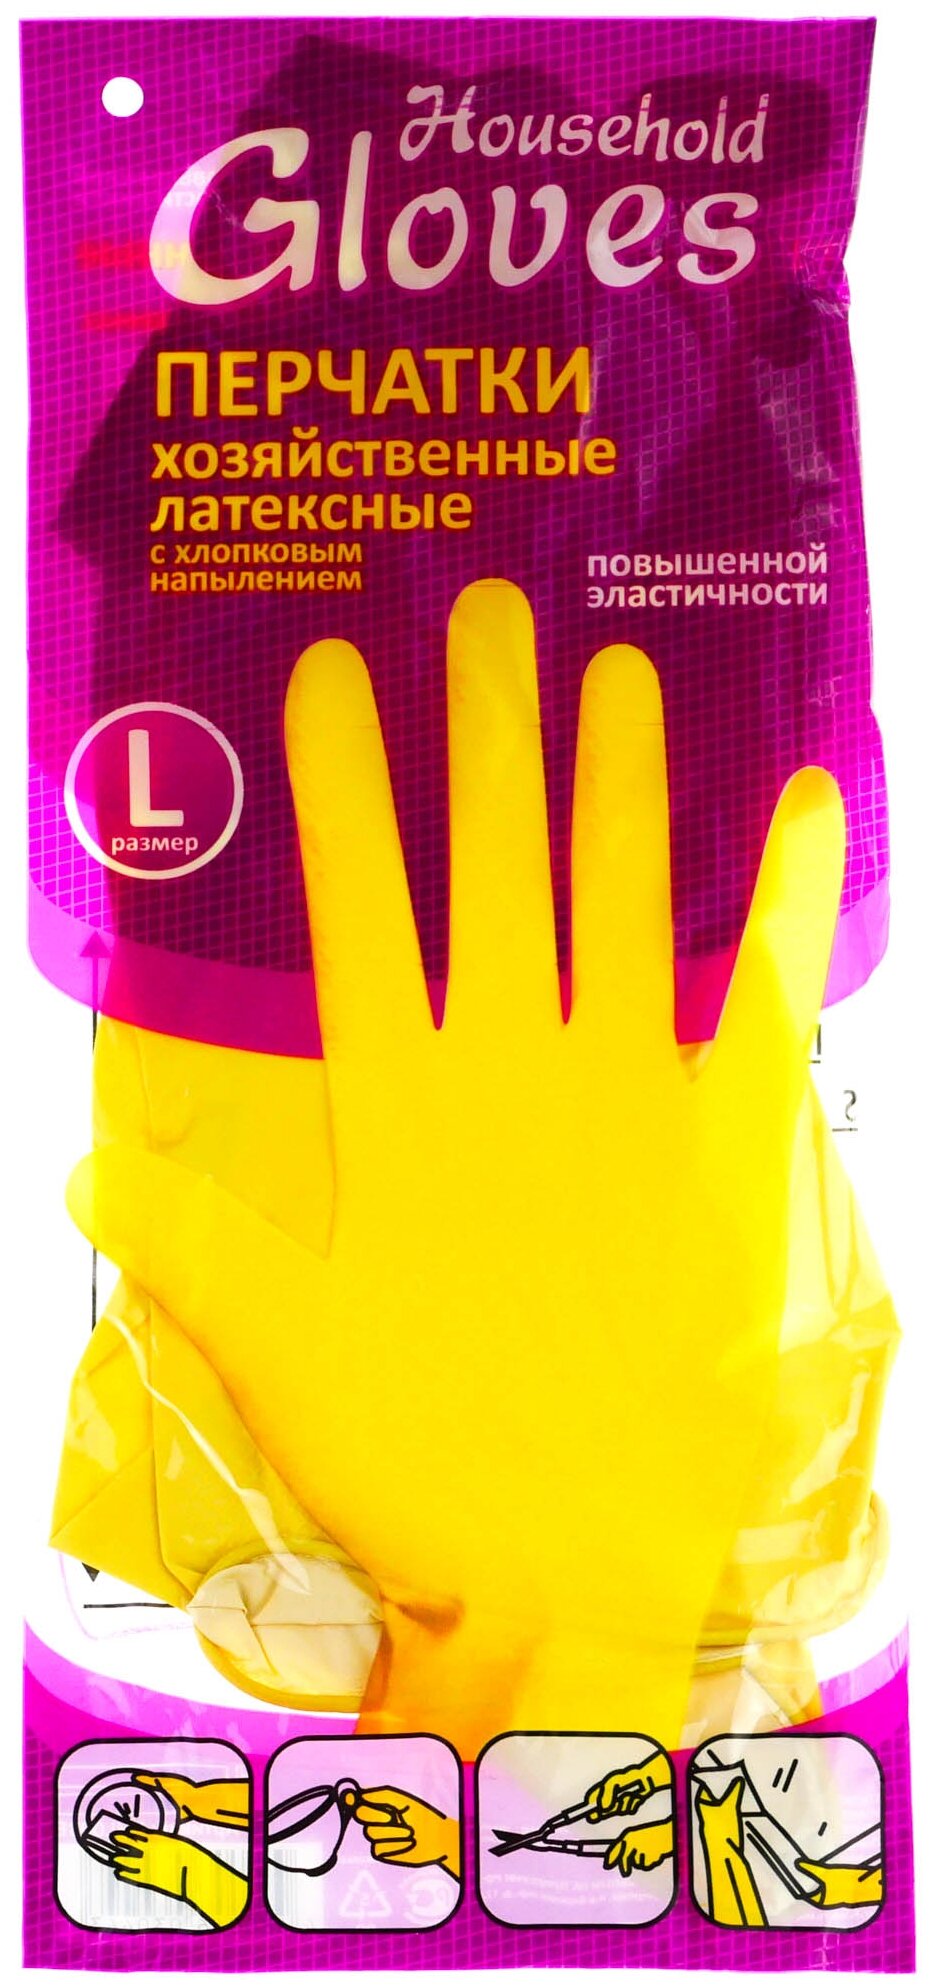 Перчатки особопрочные Household Gloves хозяйственные латексные с х/б напылением, жёлтые. Размер:L - фотография № 5